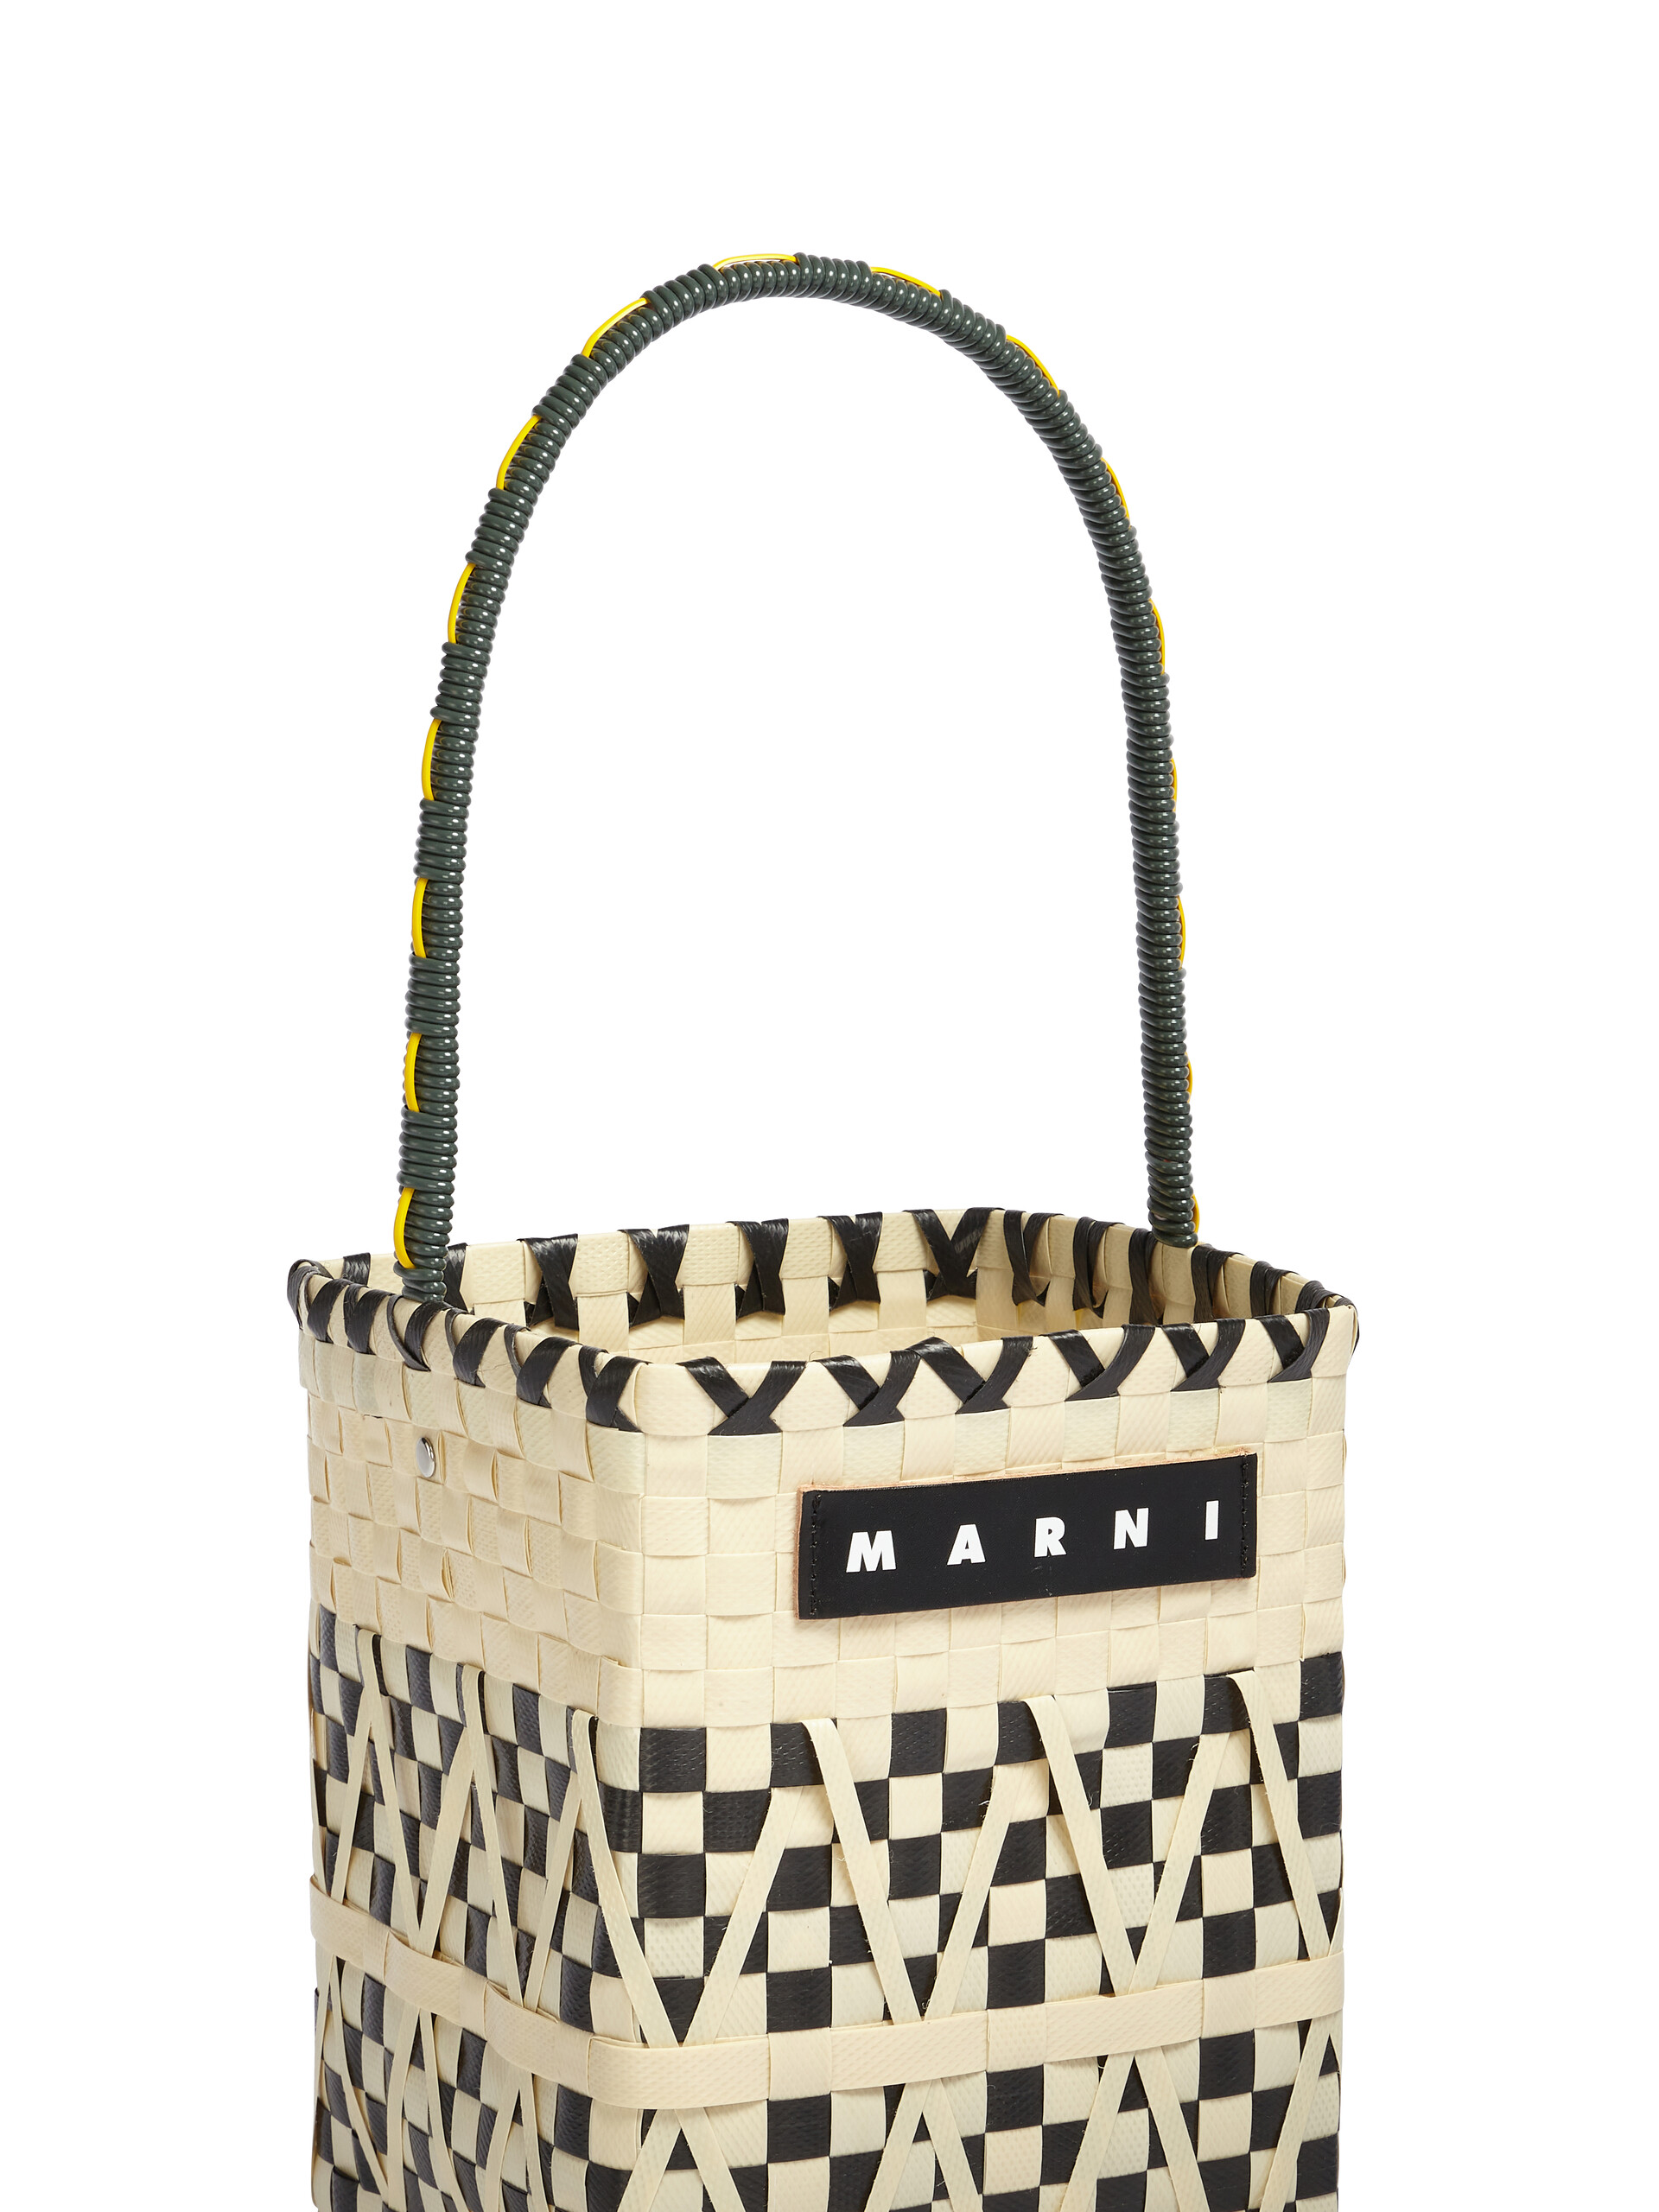 MARNI MARKET STENCIL white and black bucket bag | Marni